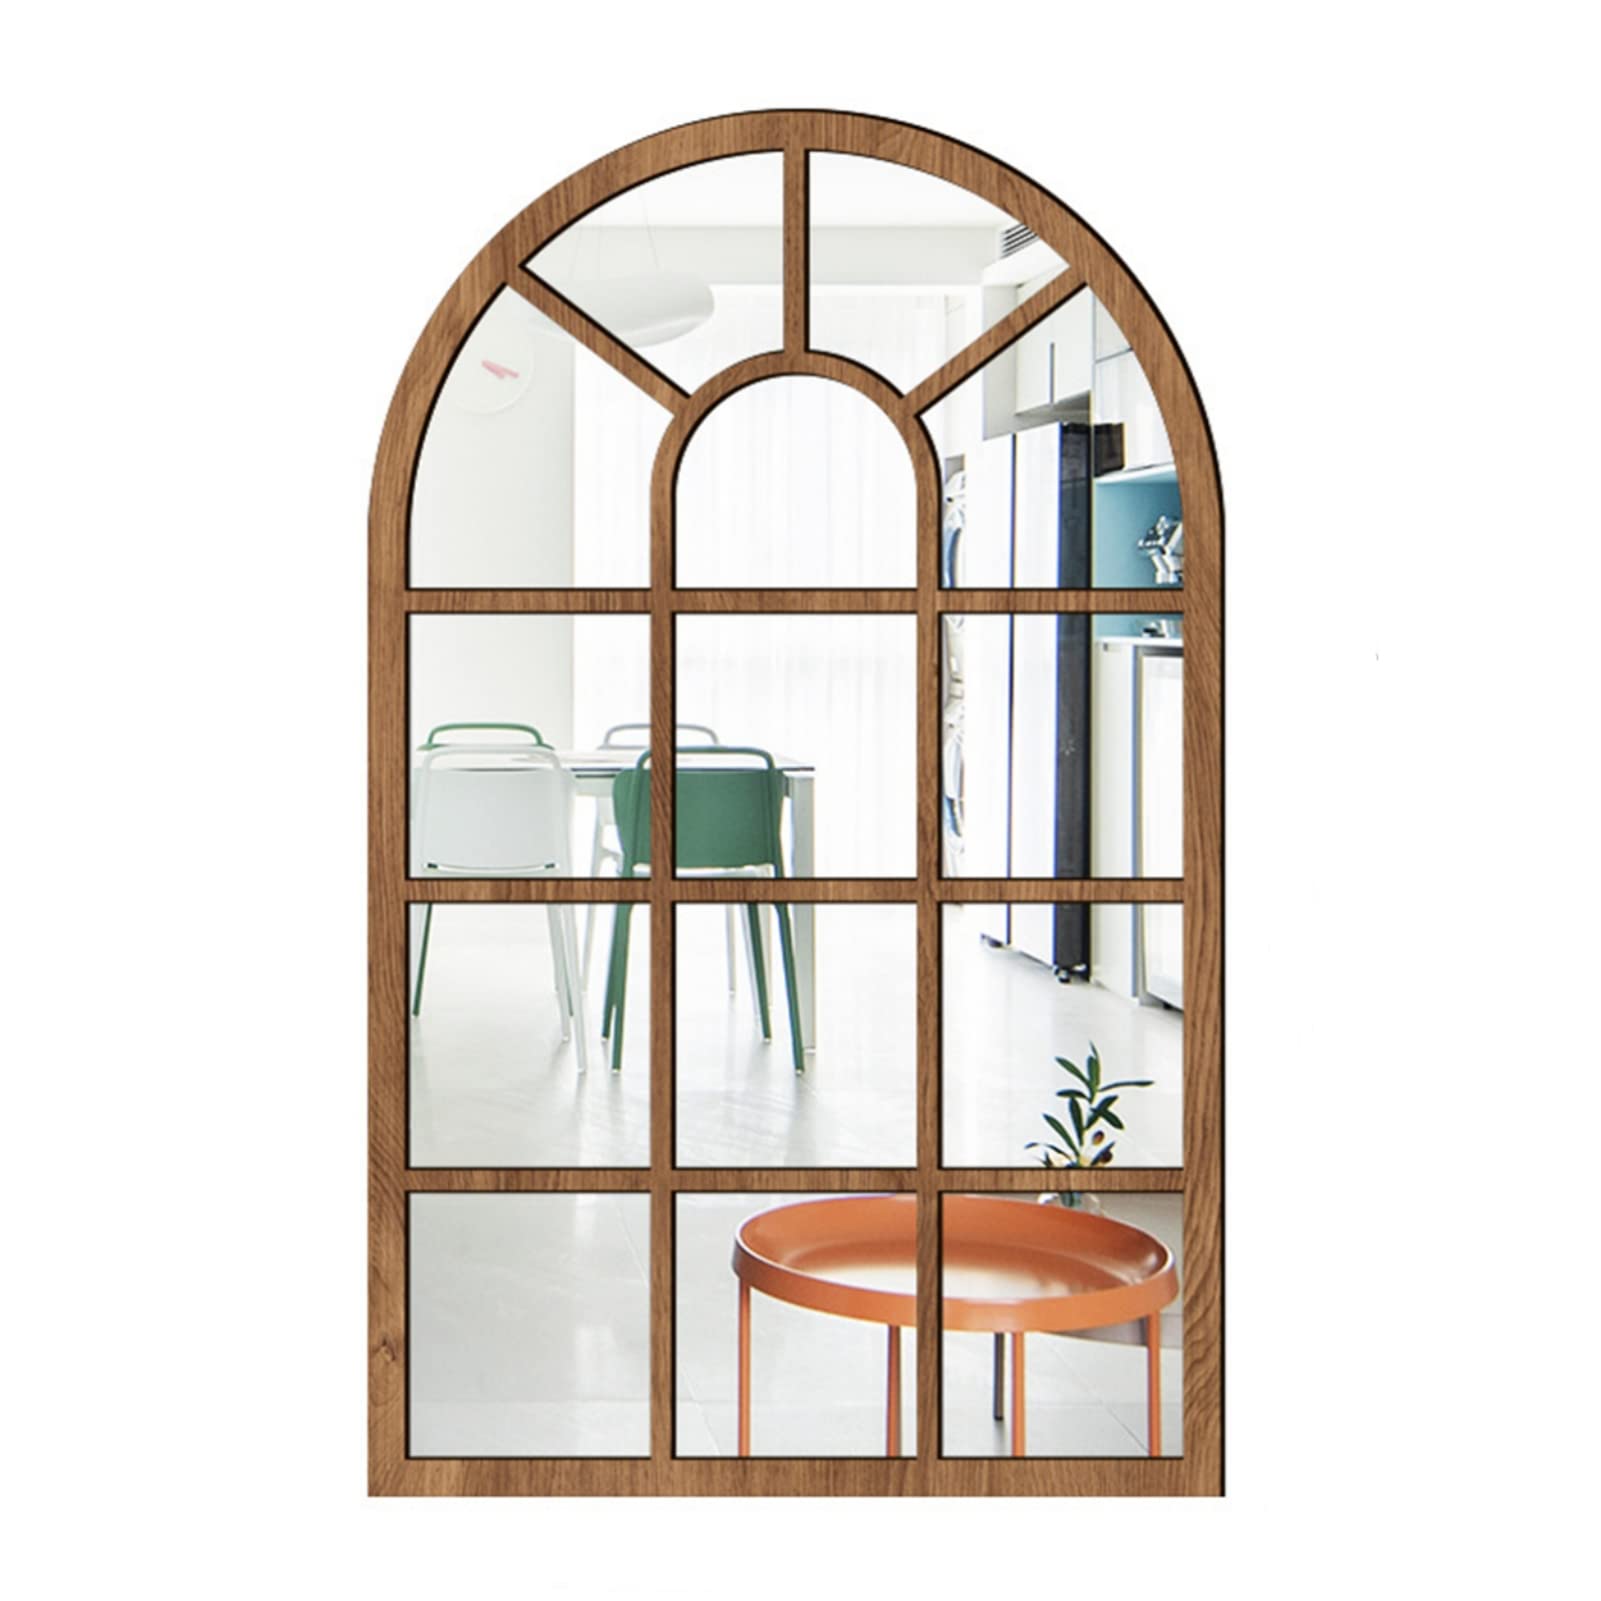 CULASIGN Wandspiegel mit Fensteroptik, 27x42cm, Vintage Bogen Spiegel Fensterspiegel Dekospiegel Dekorativer Hängespiegel für Flur, Schlafzimmer, Wohnzimmer (Braun,MZ420)